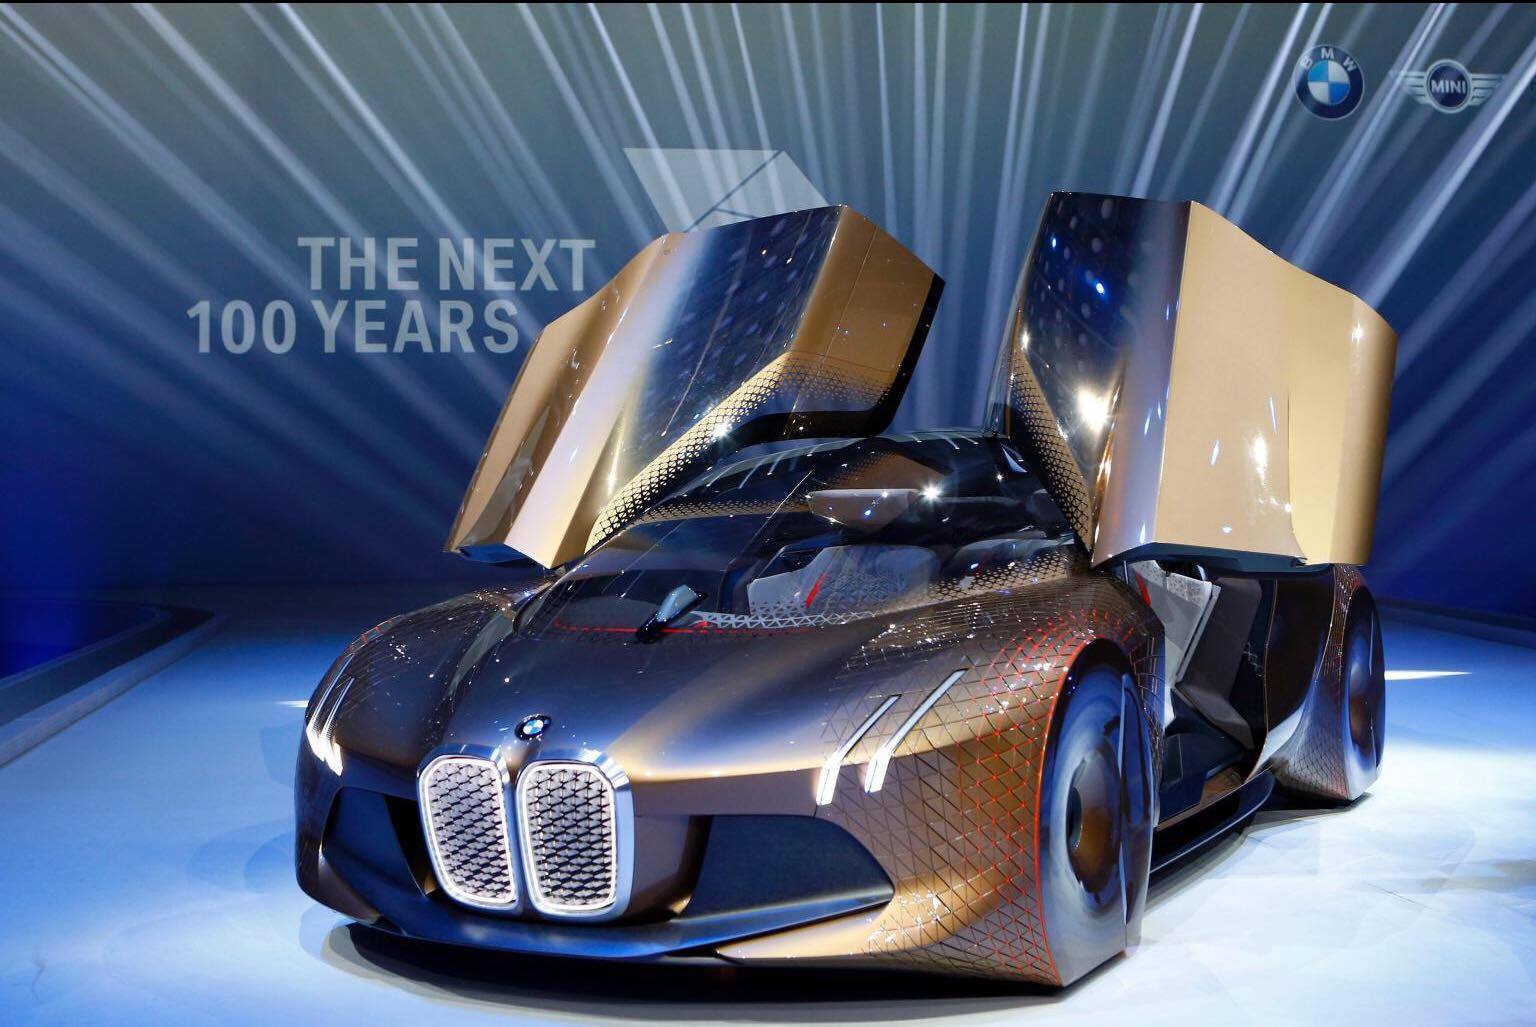 BMW เผยโฉมคอนเซปต์รถยนต์แห่งอนาคตอีก 100 ปีข้างหน้า